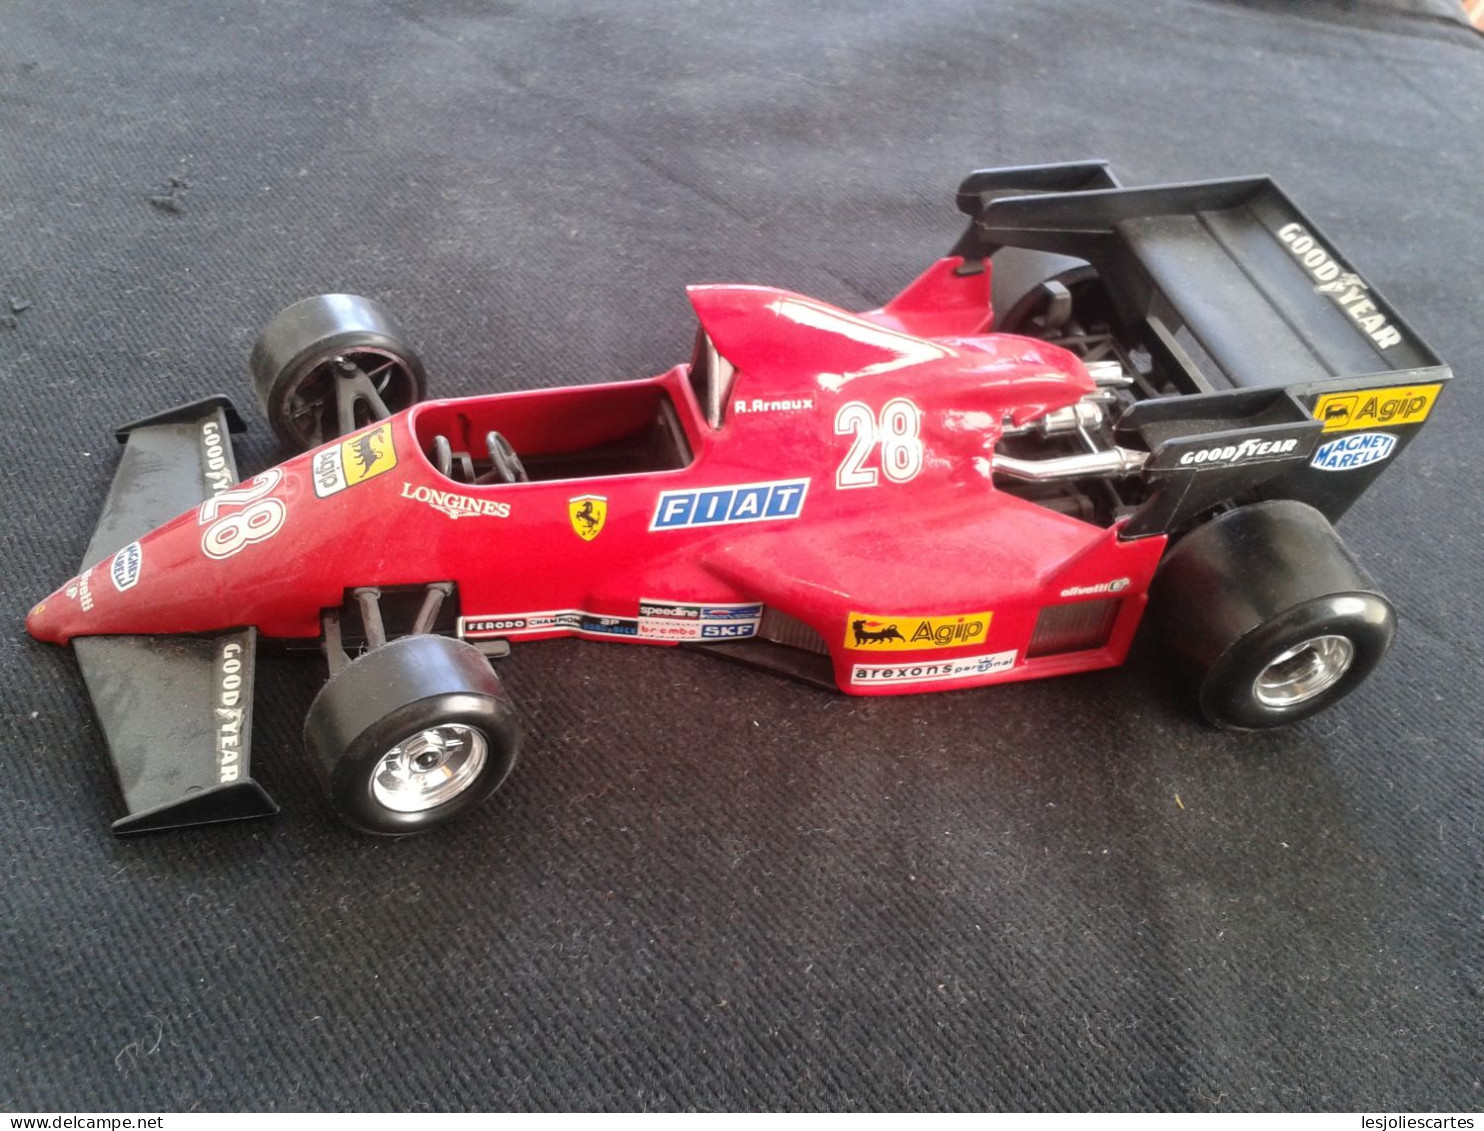 Burago 1/24 Ferrari 126c4 Modifiee Rene Arnoux F1 Formule 1 Racing 1:24 Bburago - Burago